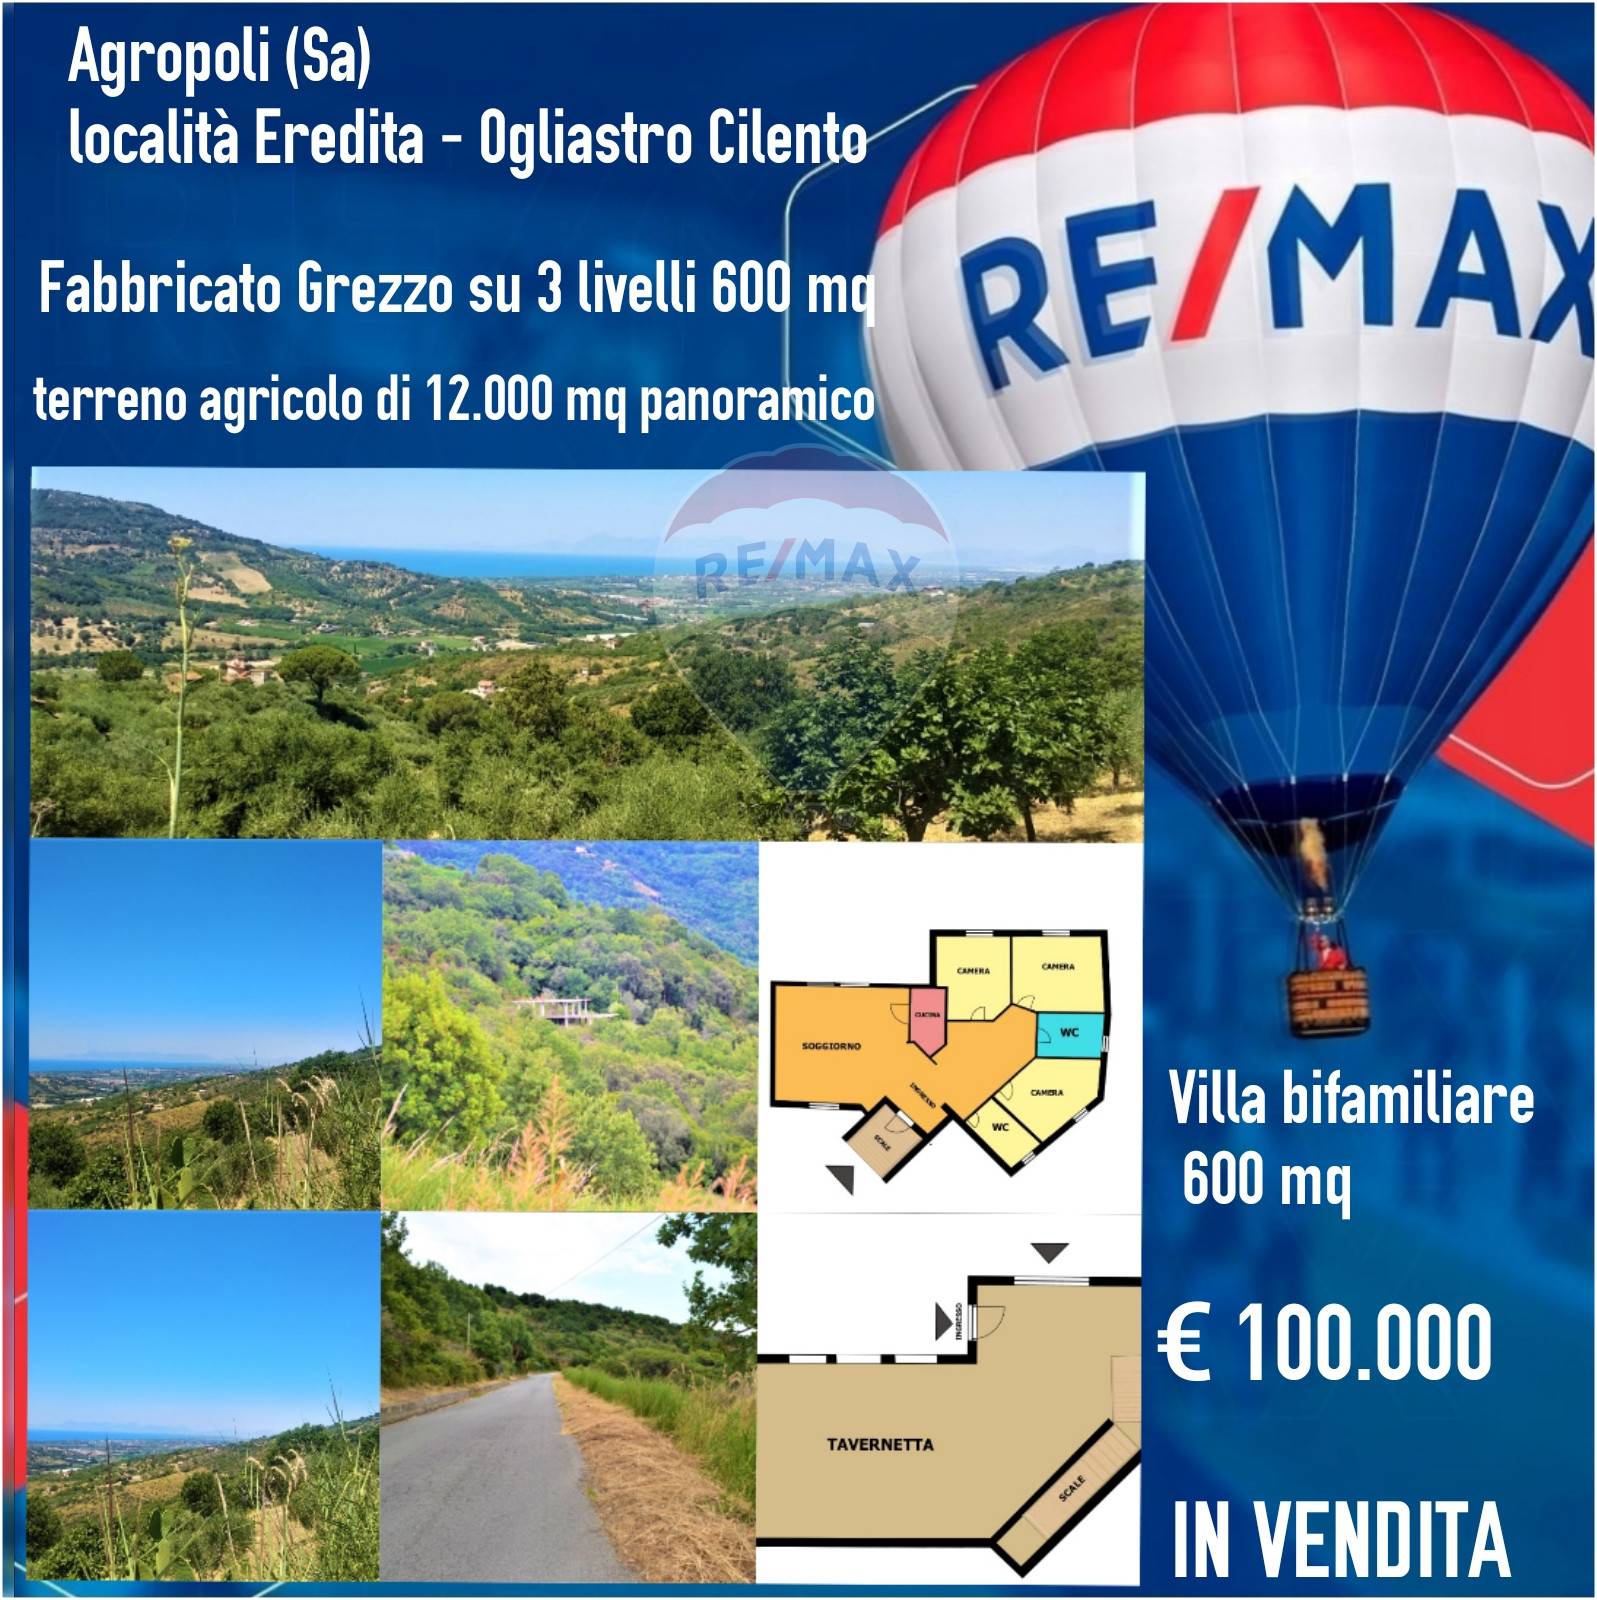 Villa Bifamiliare in vendita a Agropoli, 8 locali, prezzo € 100.000 | CambioCasa.it